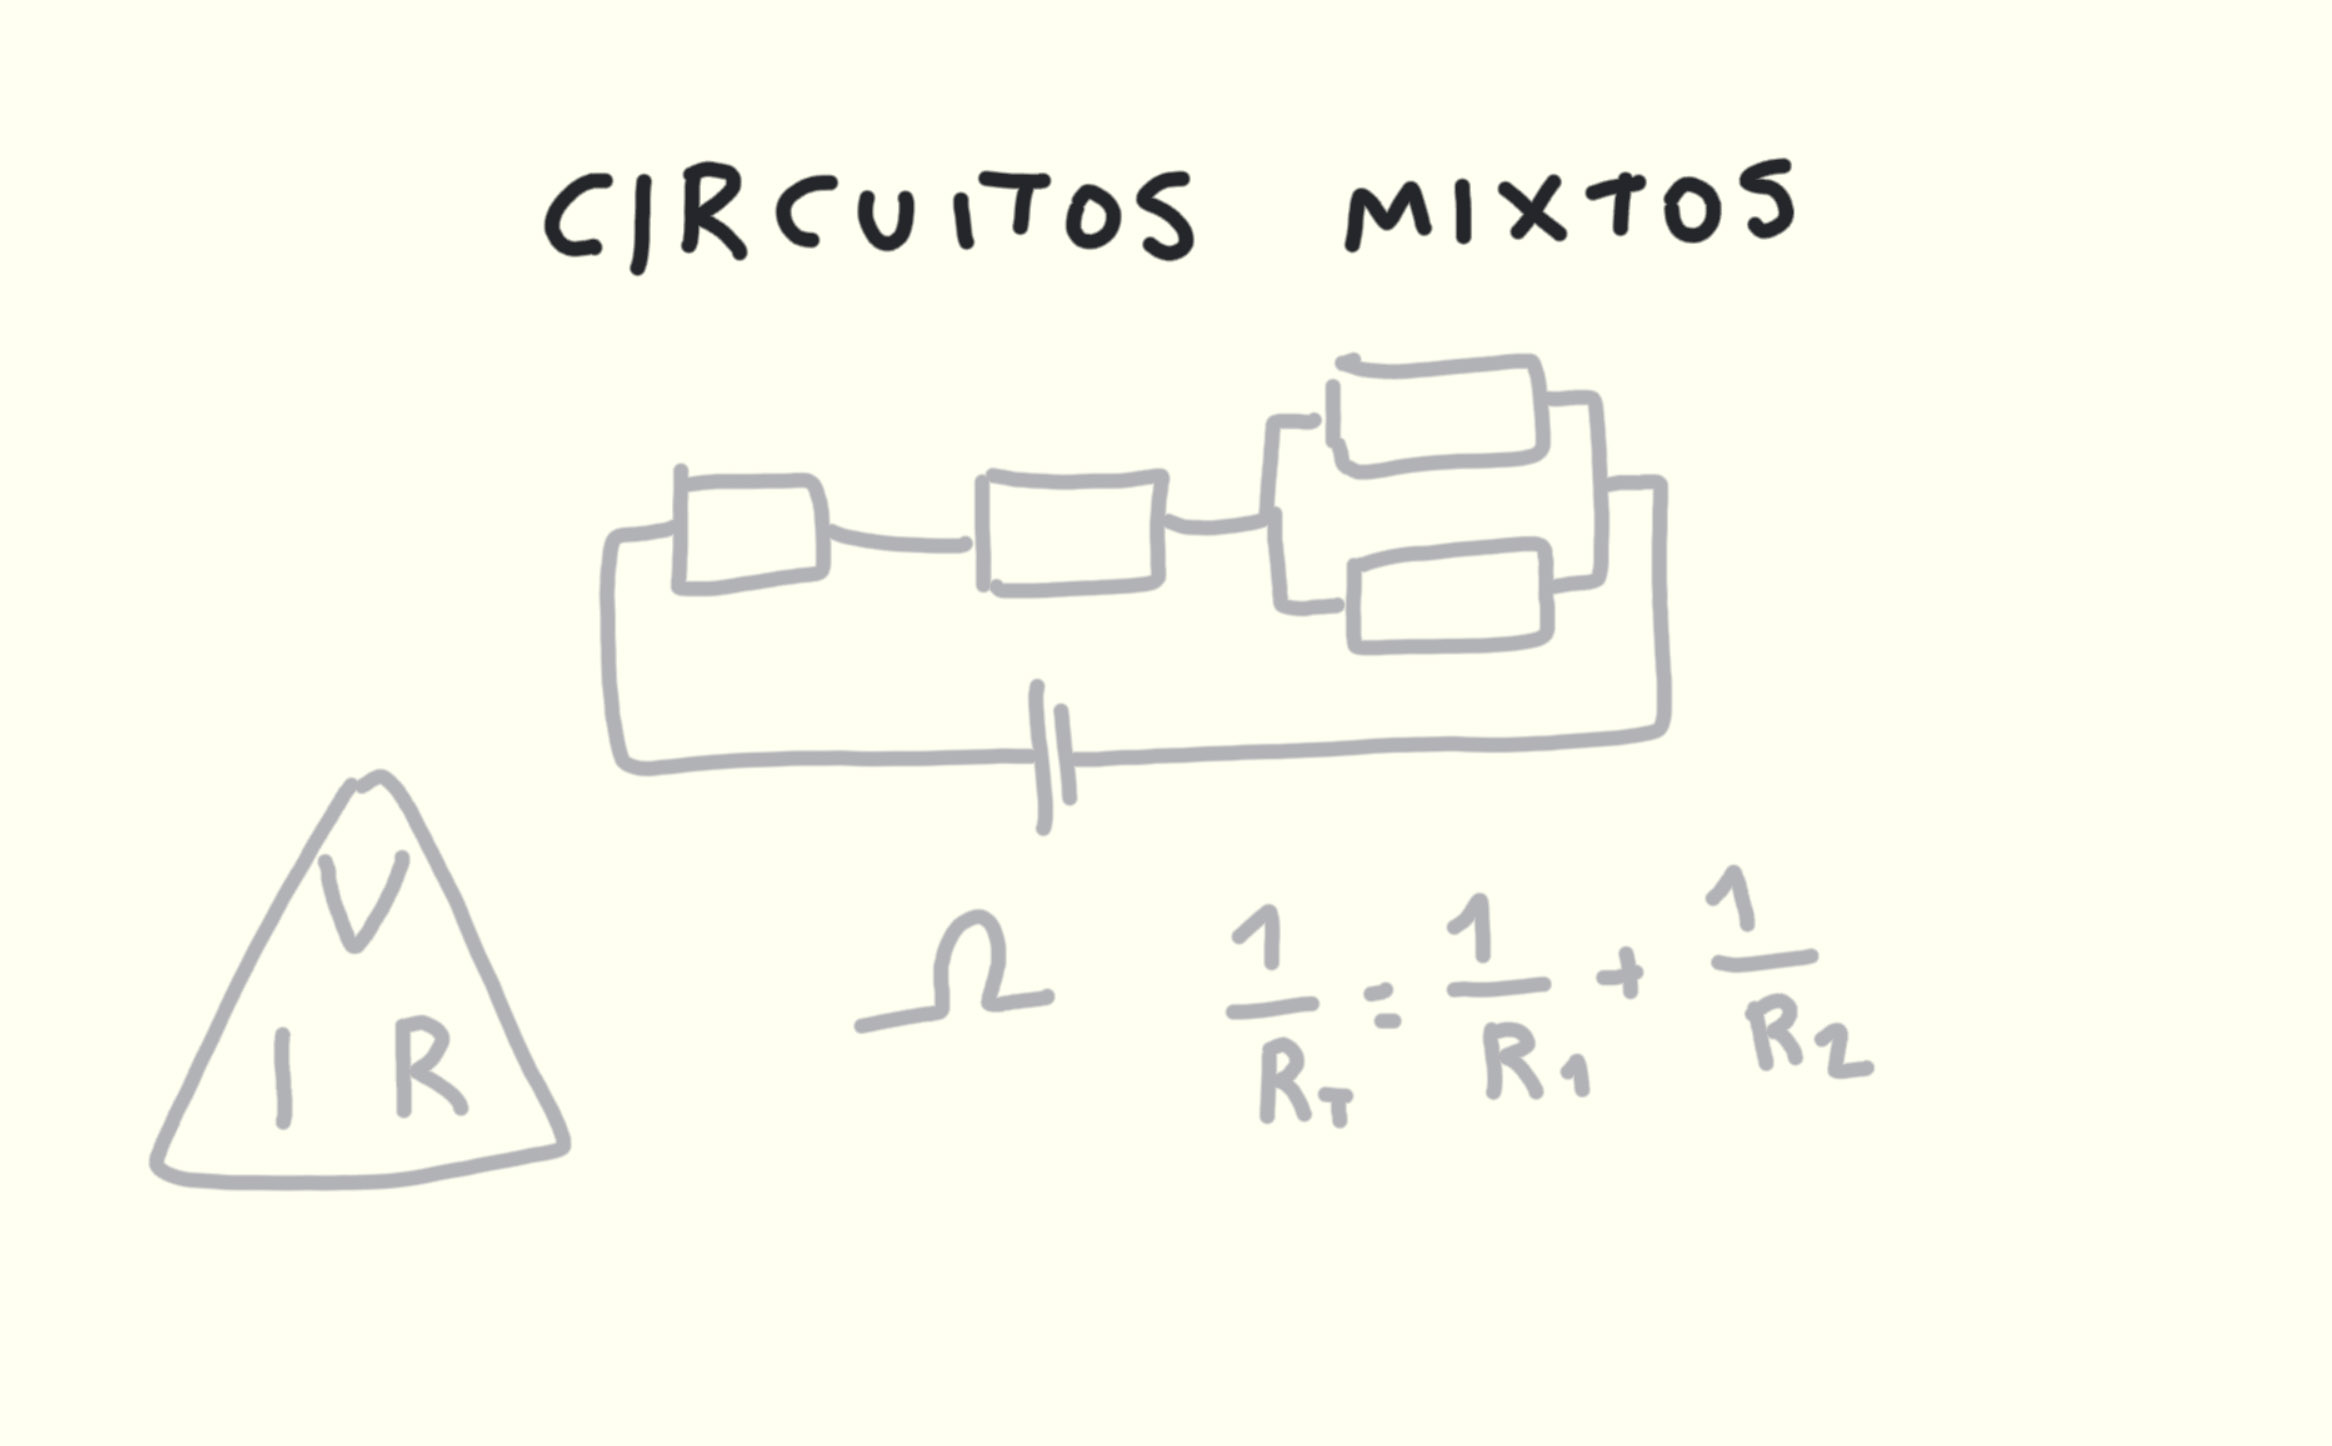 ejercicios circuitos mixtos